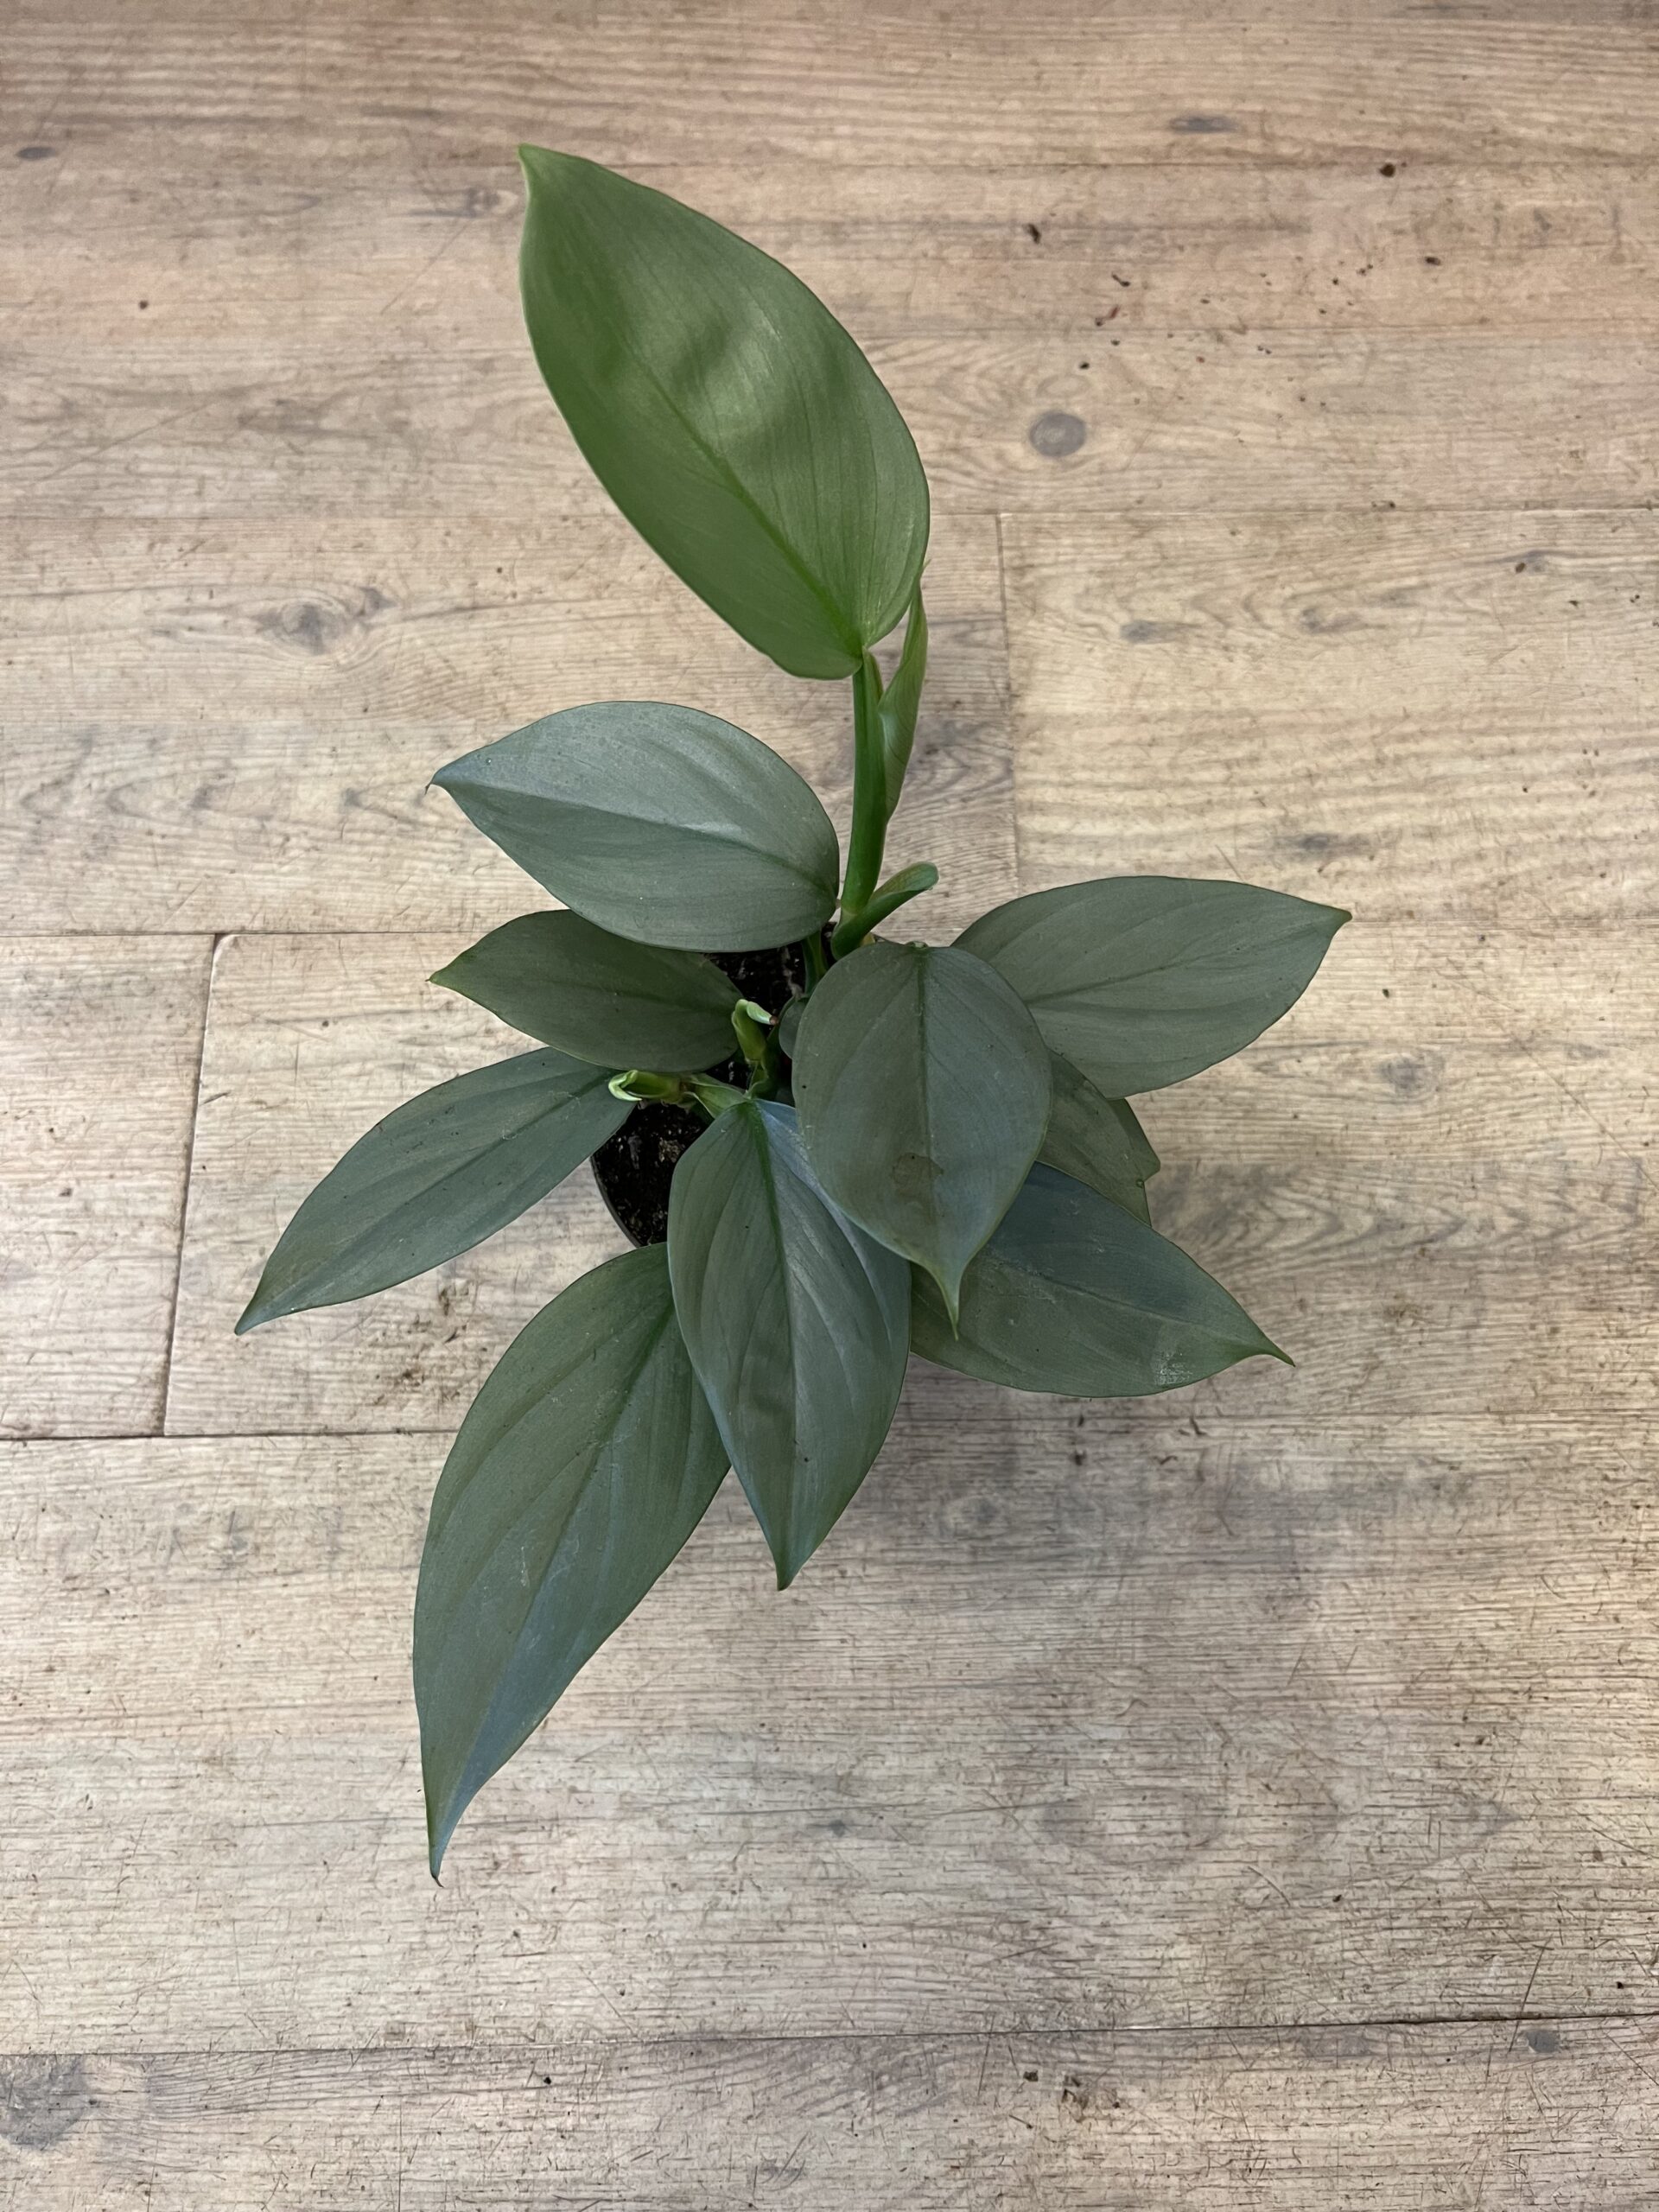 Philodendron-Grey-blade-Groenne-planter-billigt-Happyflower-dk-scaled